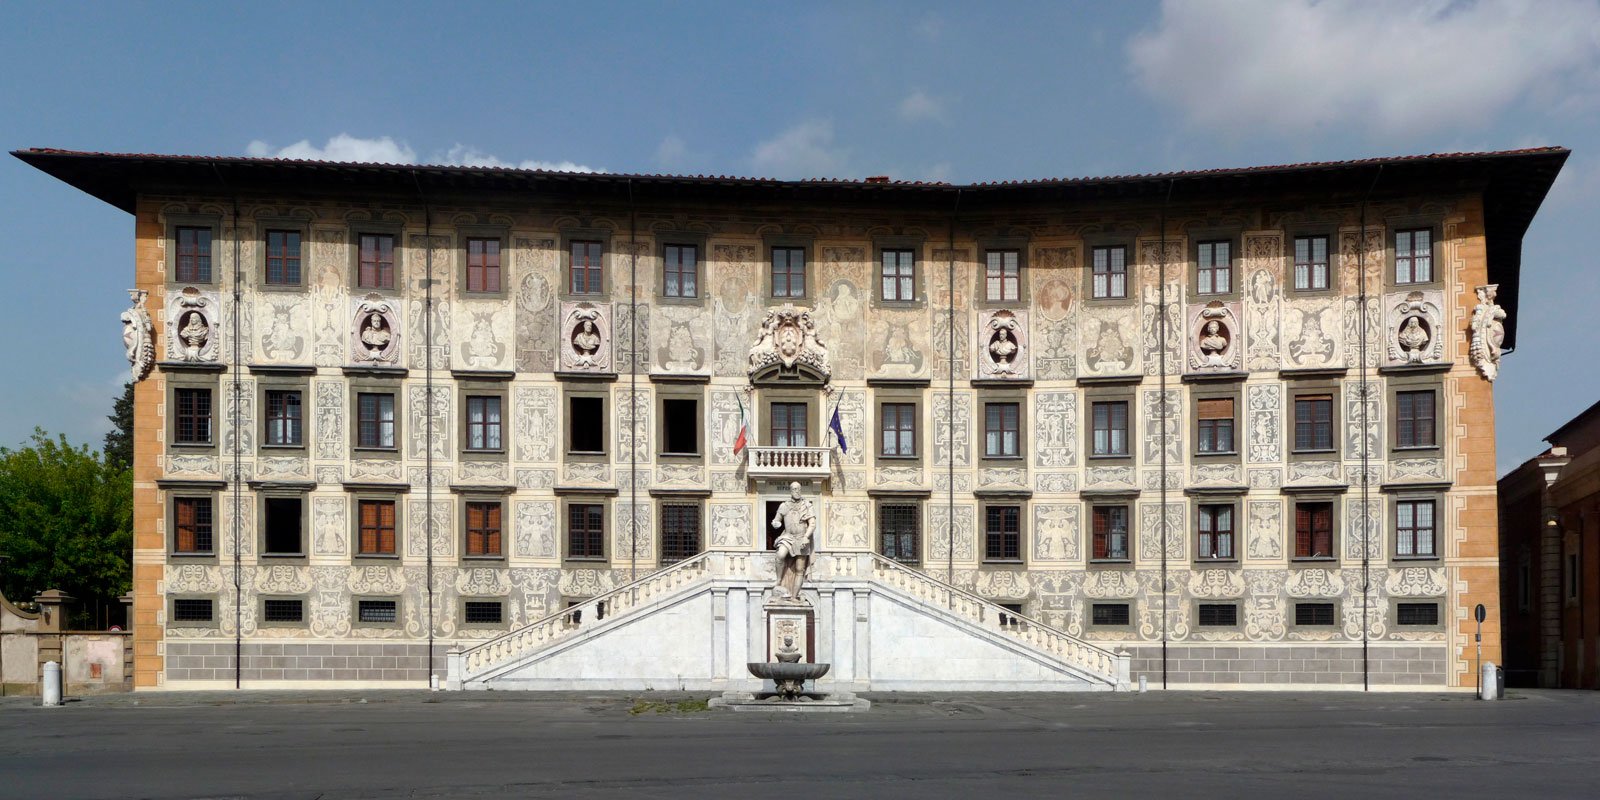 Becas Scuola Normale Superiore en Italia